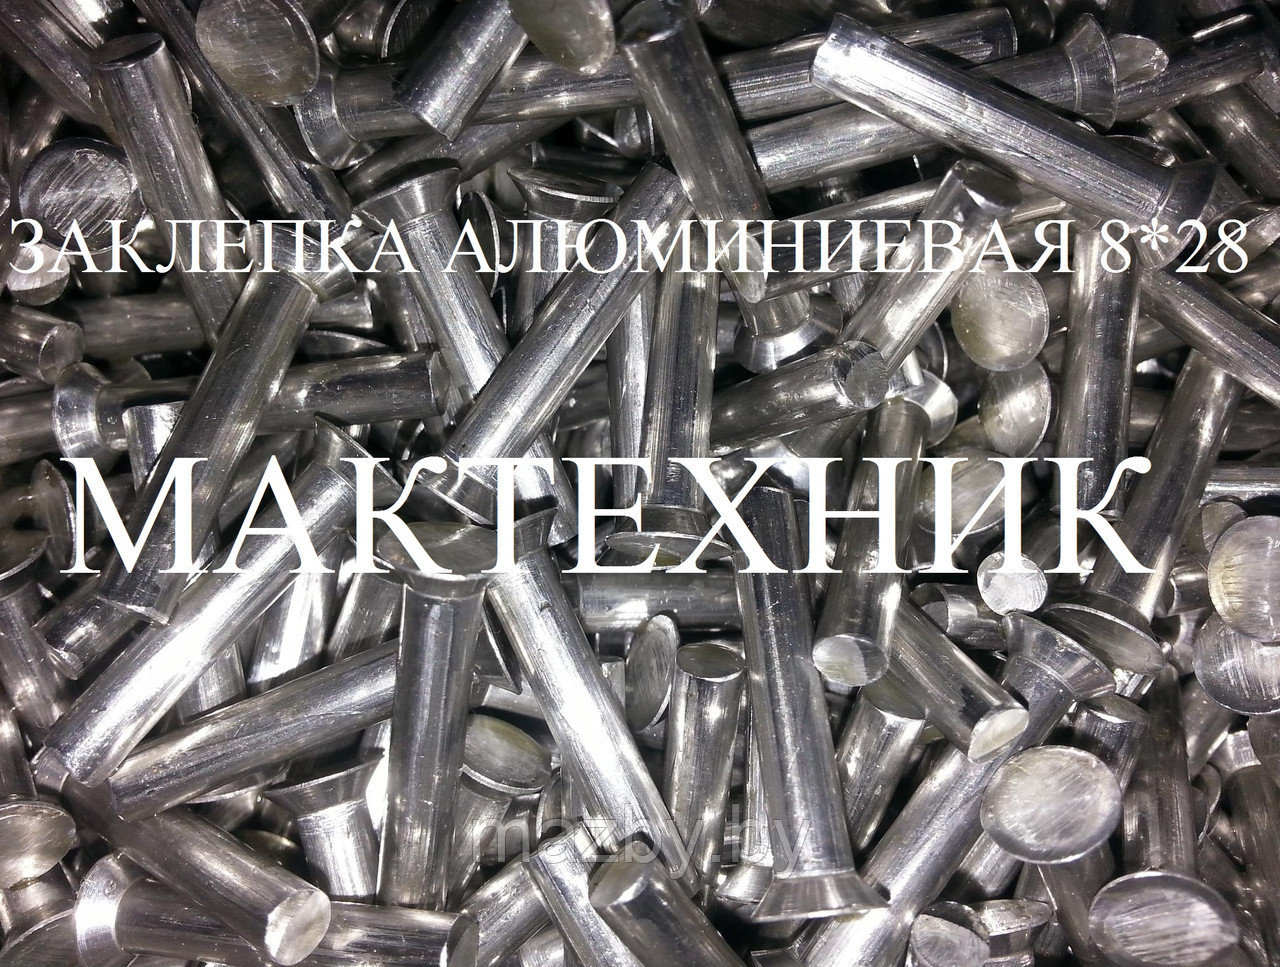 Алюминиевые заклепки тормозные 8*28 (1кг) (222 шт) 853658: продажа .